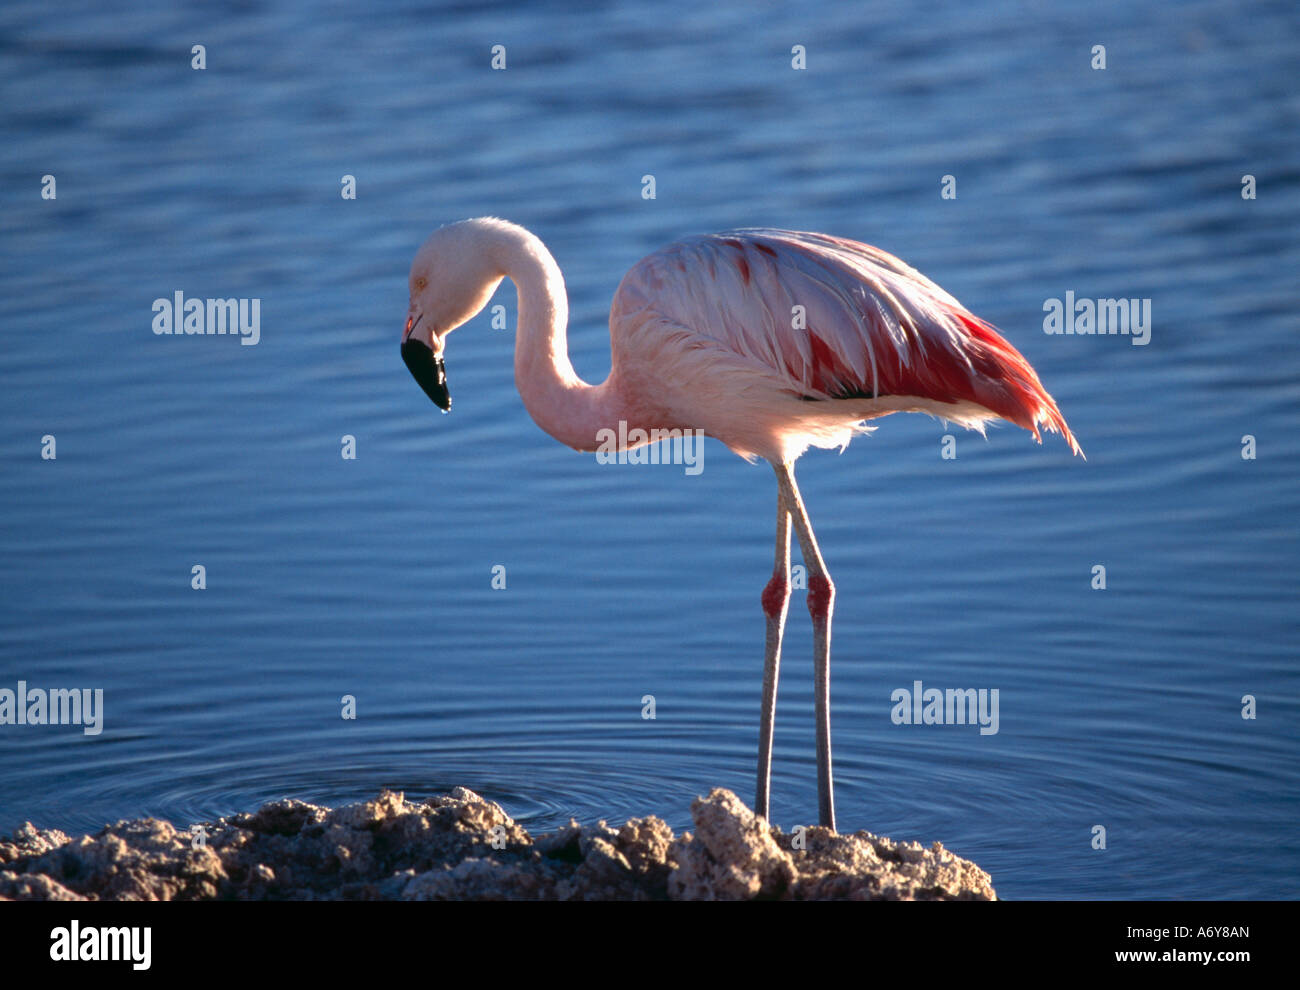 Chilenische Flamingo Phoenicopterus Chilensis stehen im Wasser und auf der Suche nach Nahrung Laguna Lejia Atacama Region Chile Stockfoto